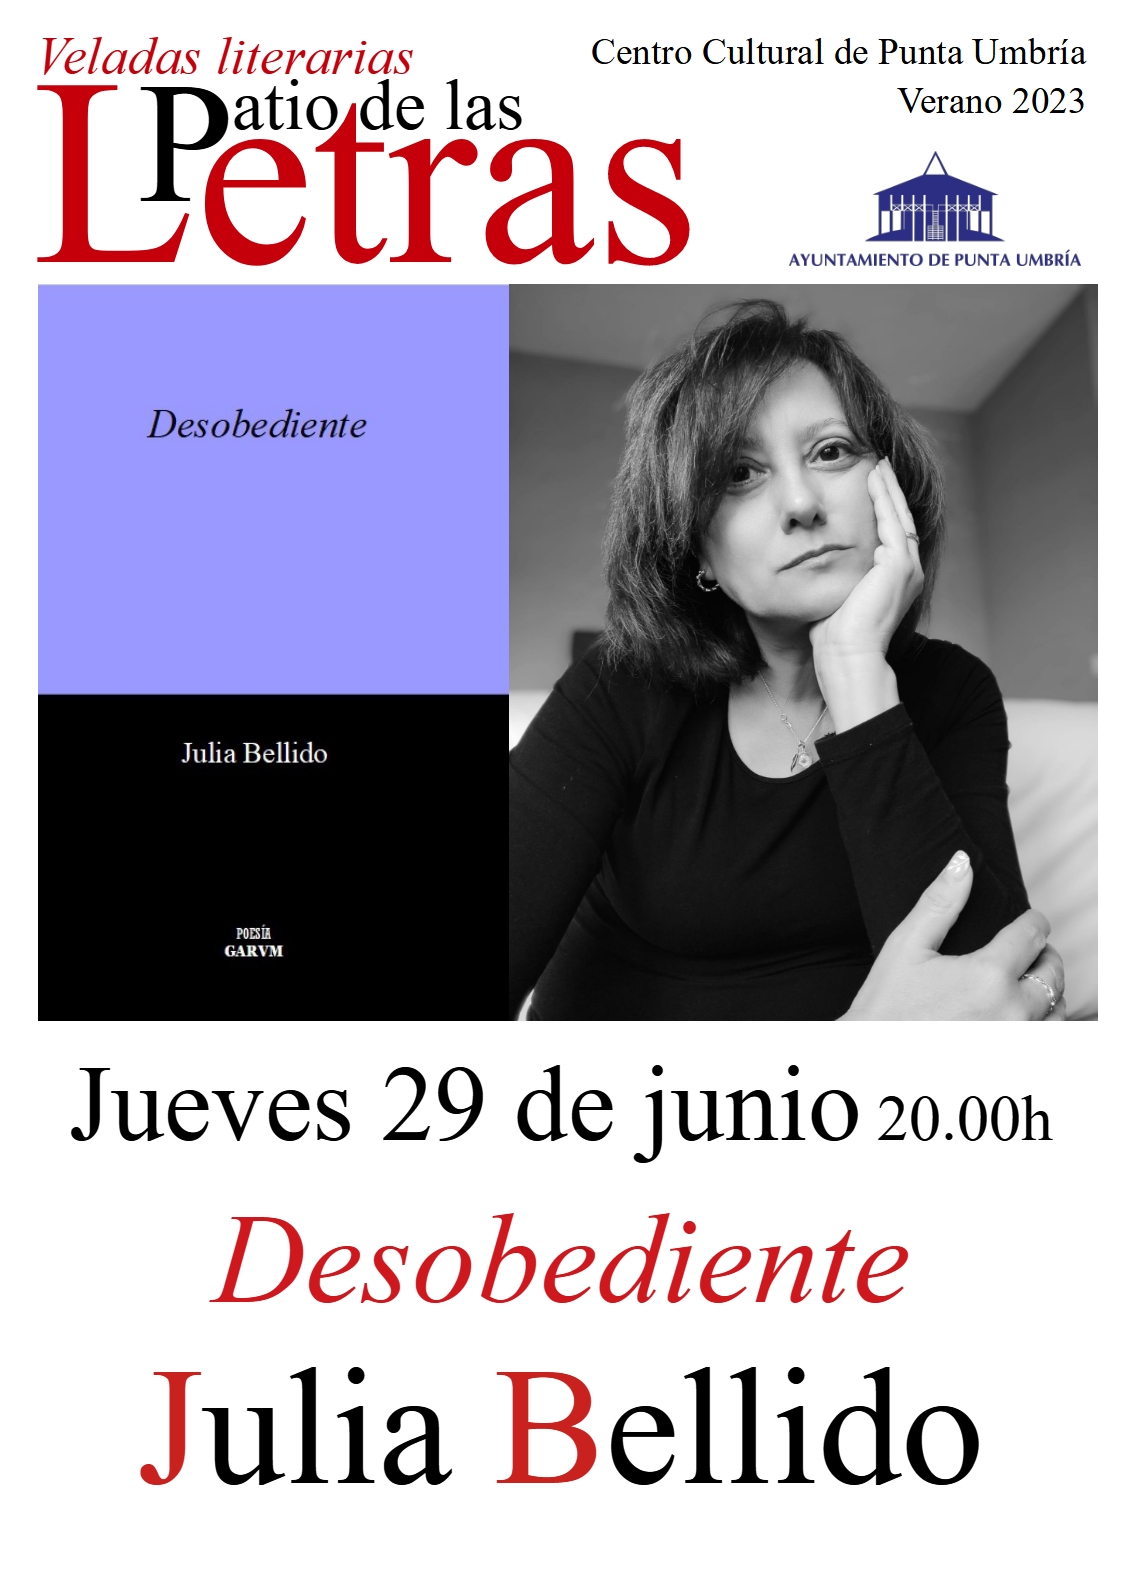 Julia Beliido presenta mañana jueves 'Desobediente' en el ciclo del Patio de las Letras